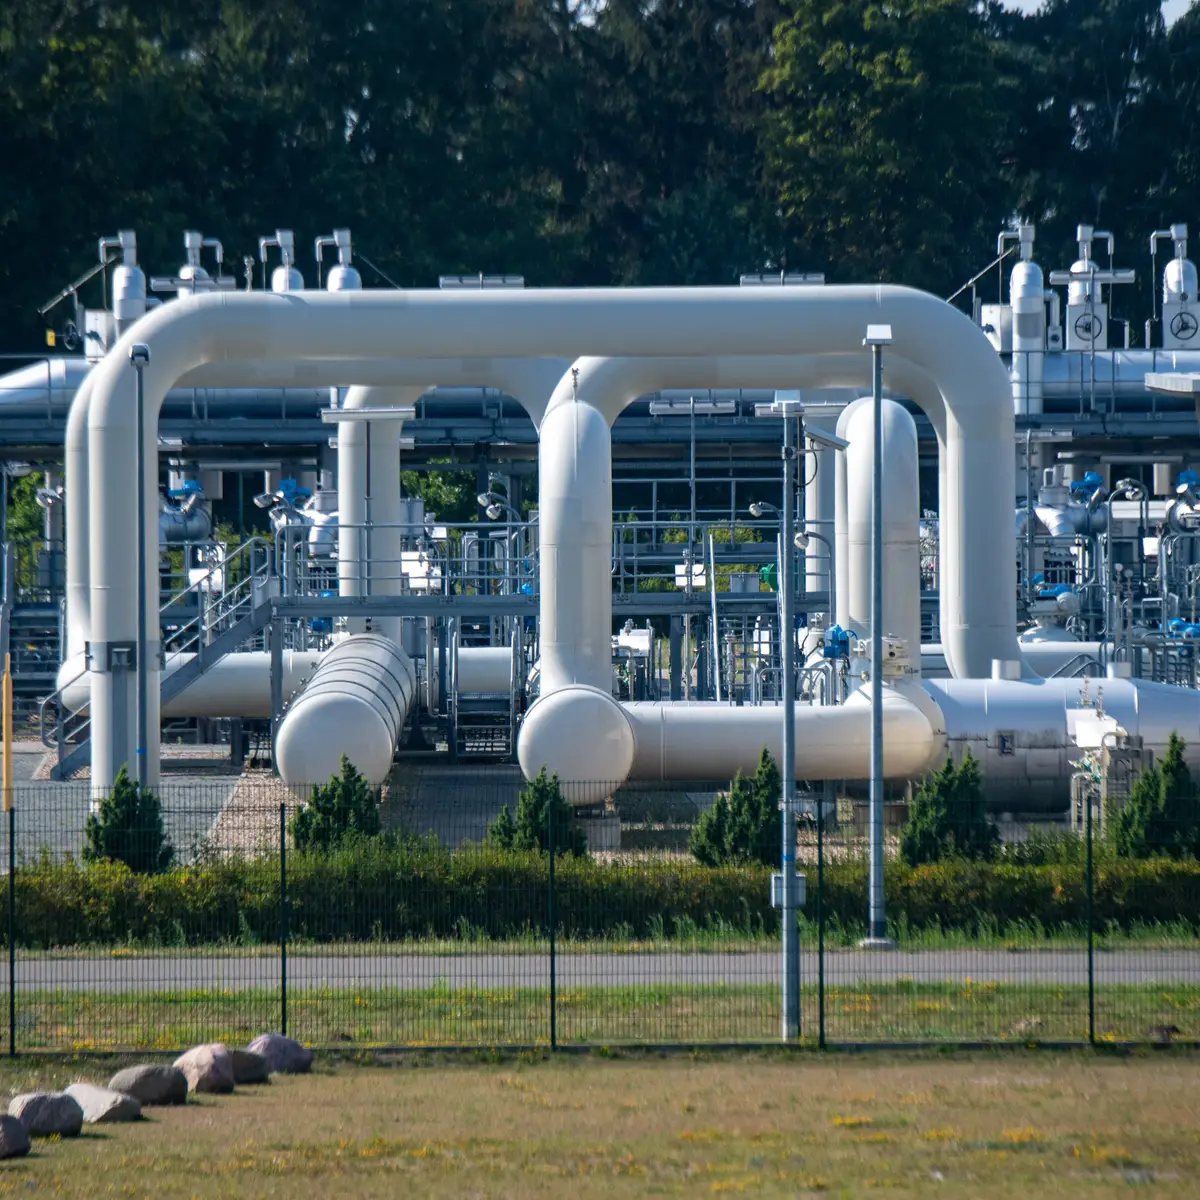 Gazprom anuncia suspensão do fornecimento de gás à Finlândia